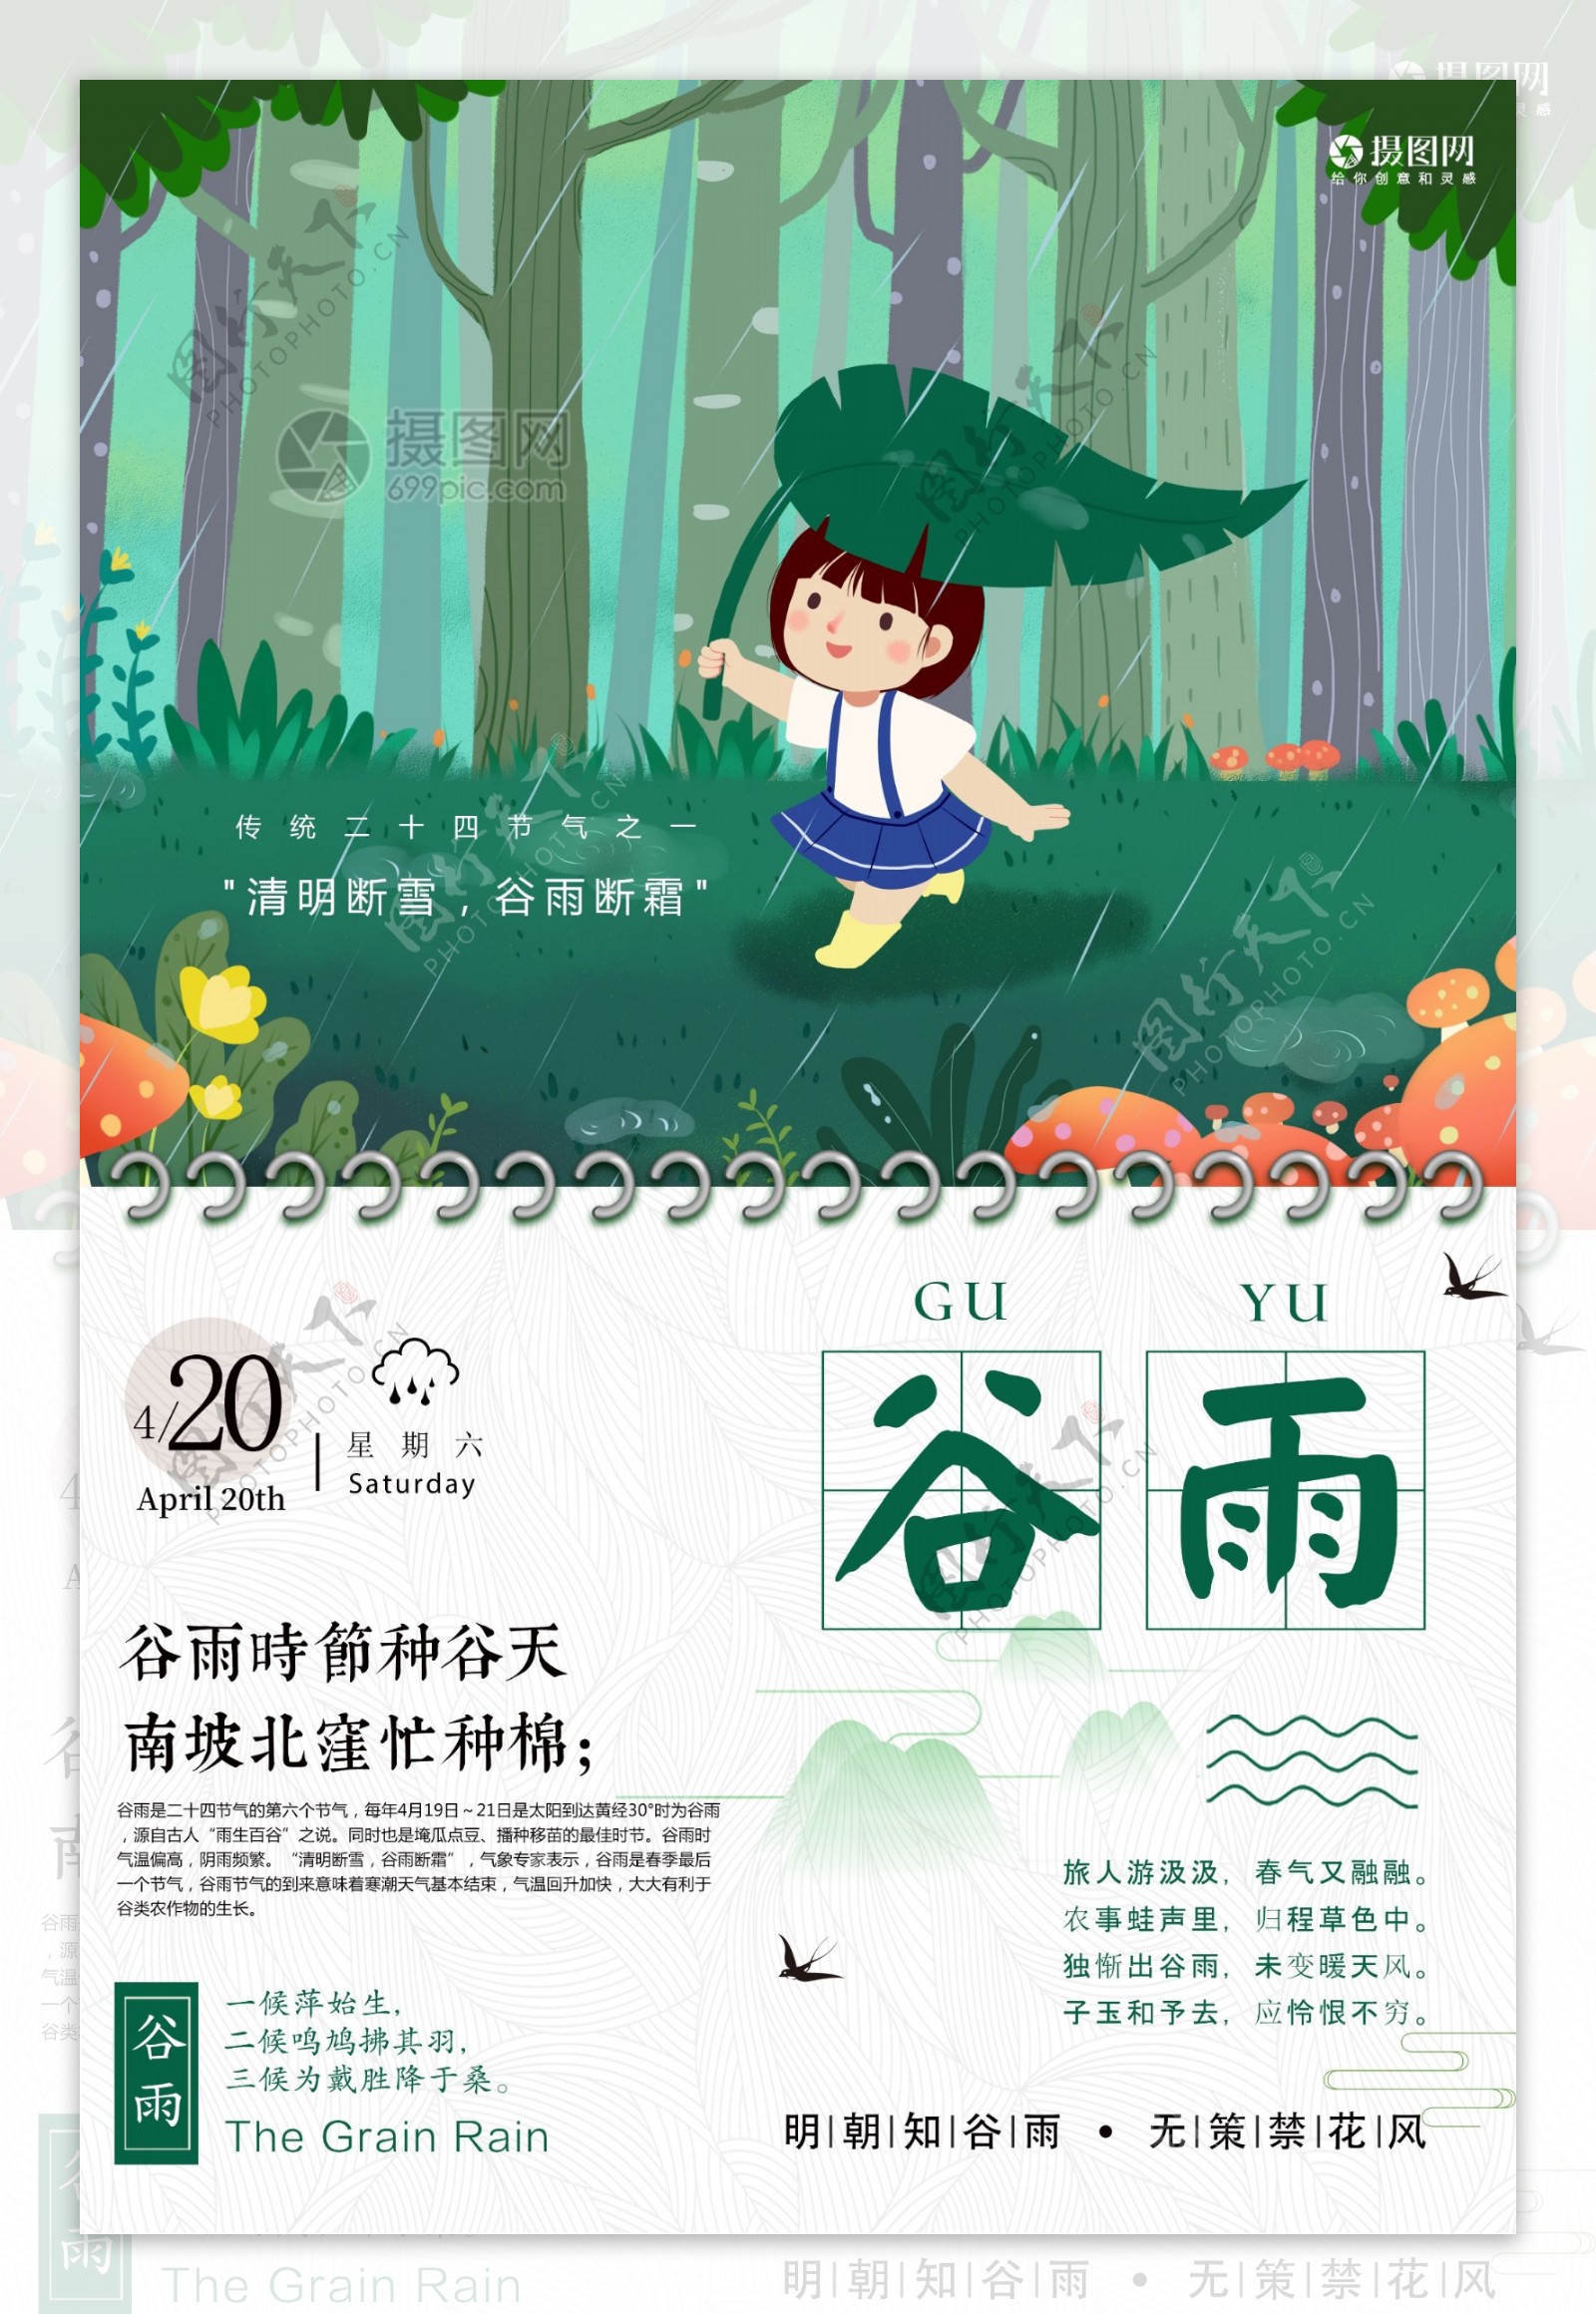 中国节气谷雨宣传海报